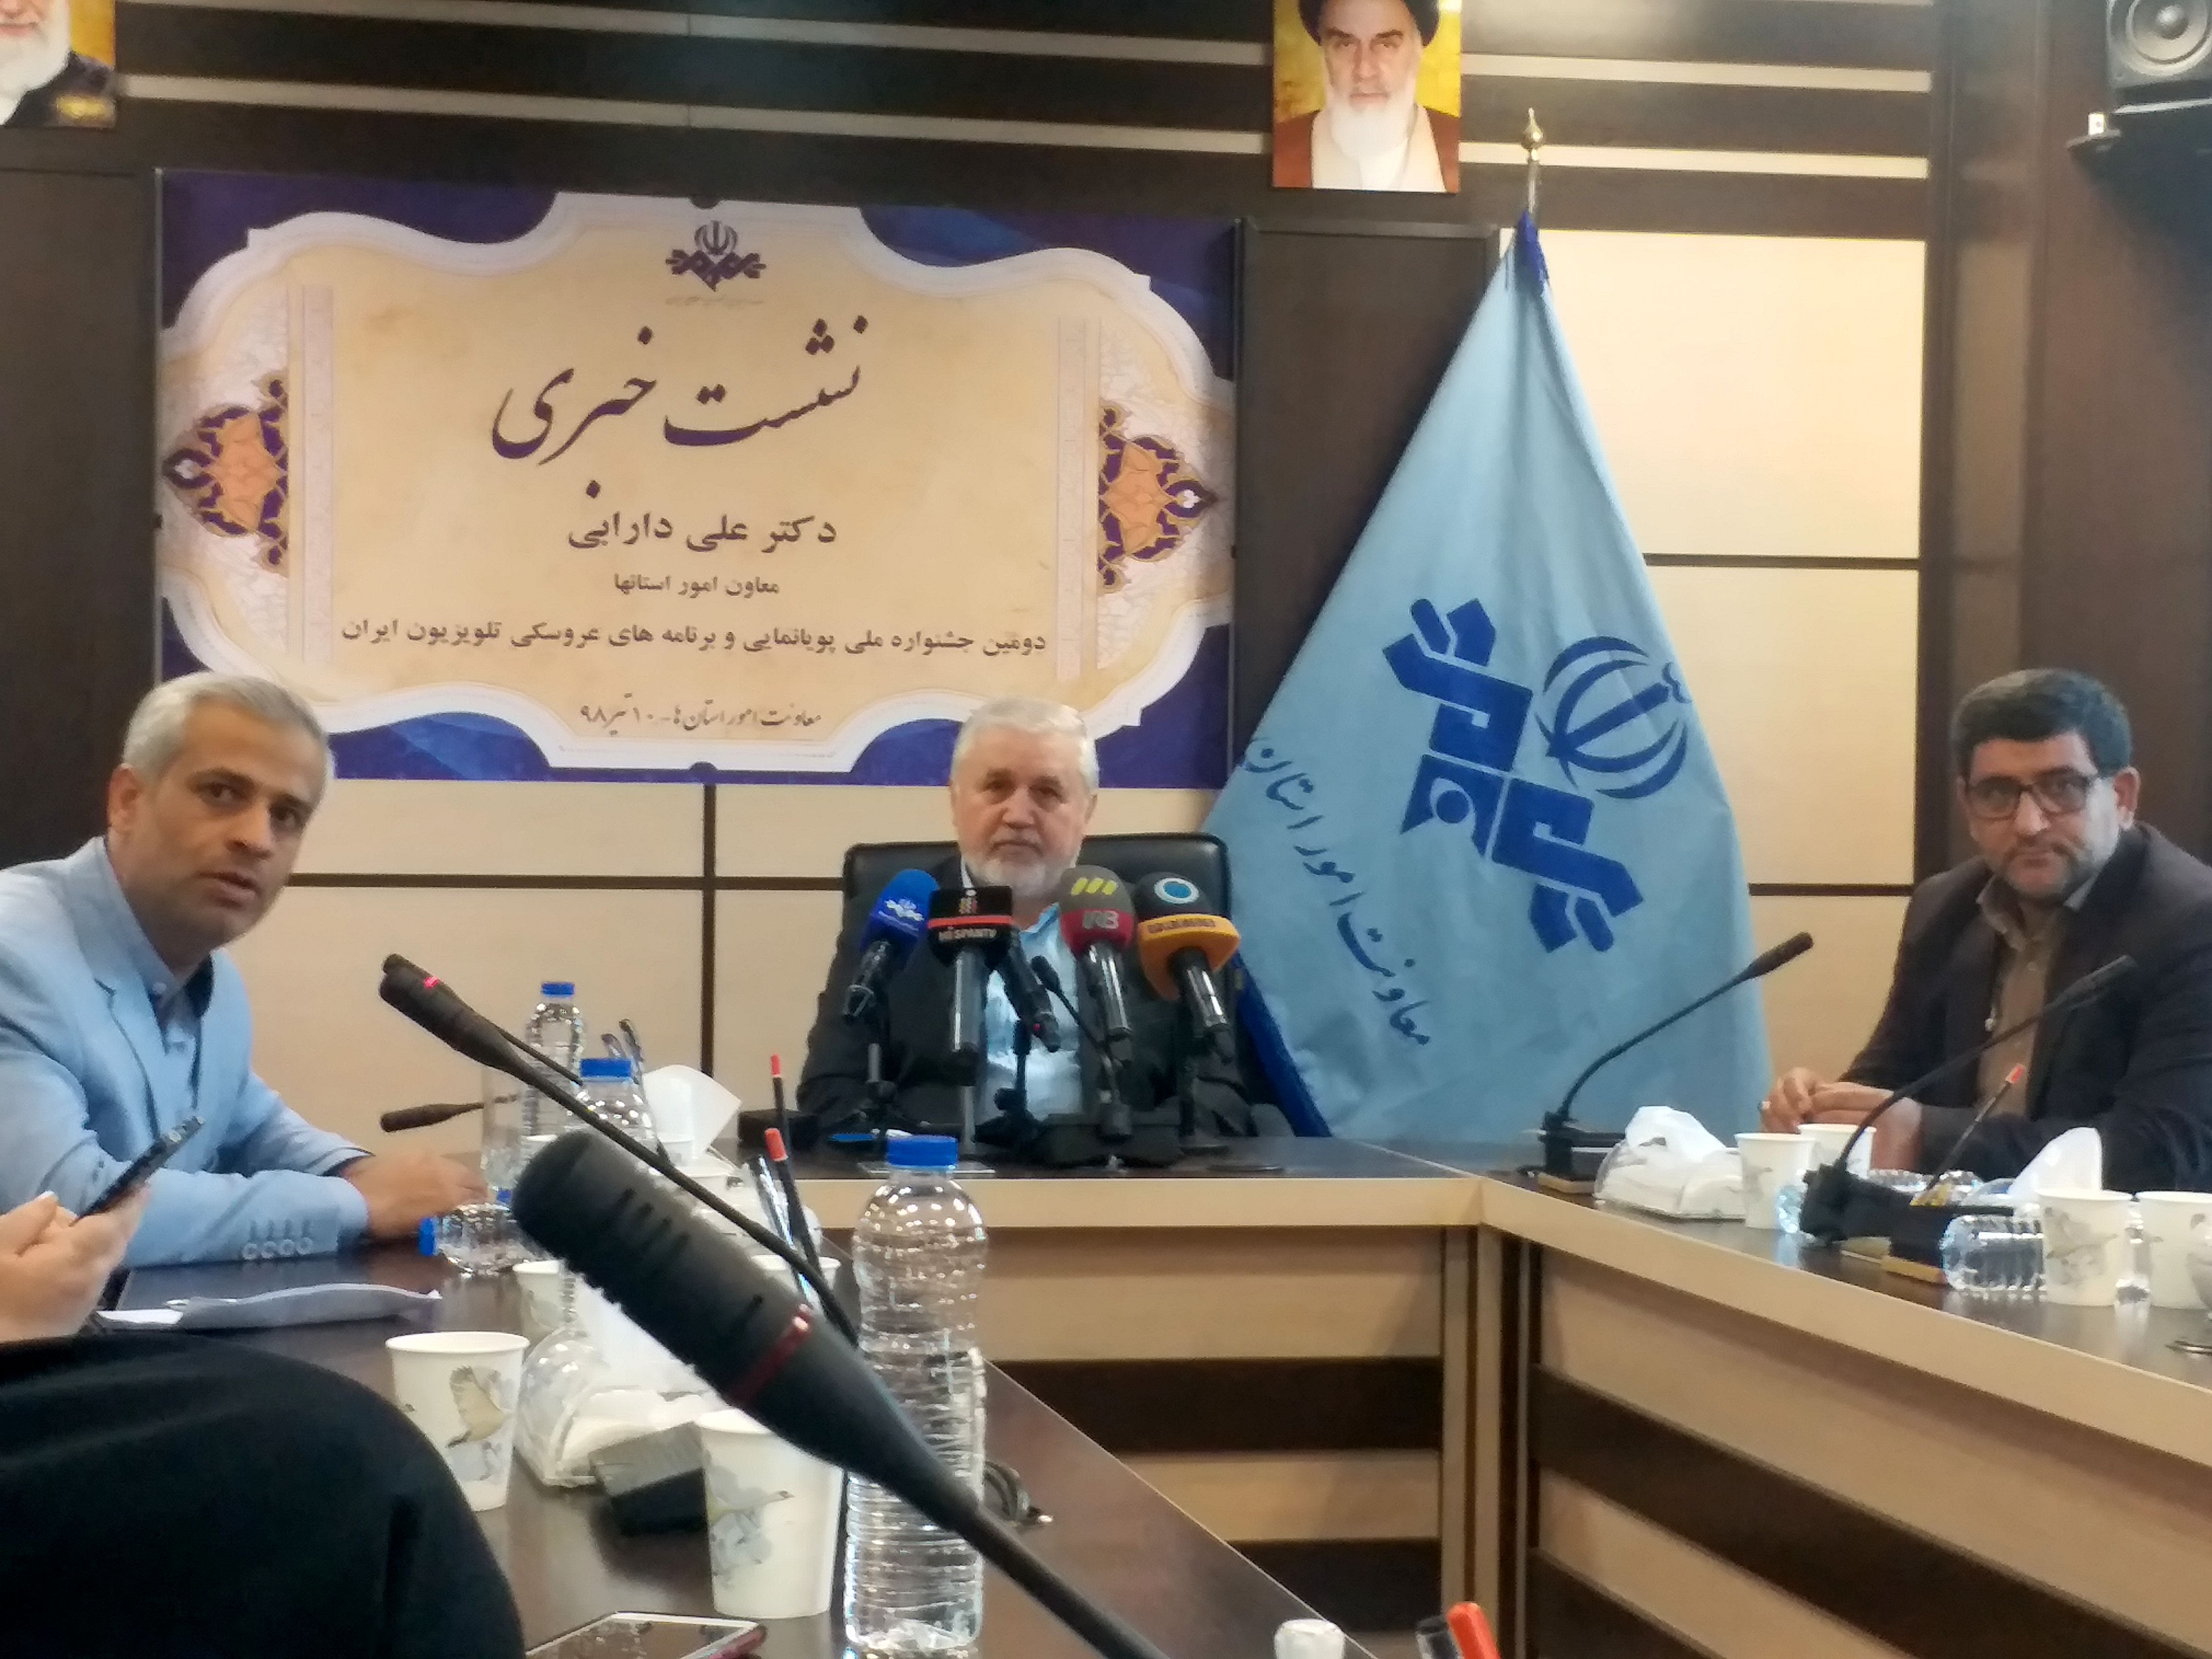 نشست خبری دومین جشنواره ملی پویانمایی و برنامه های عروسکی تلویزیون ایران برگزار شد